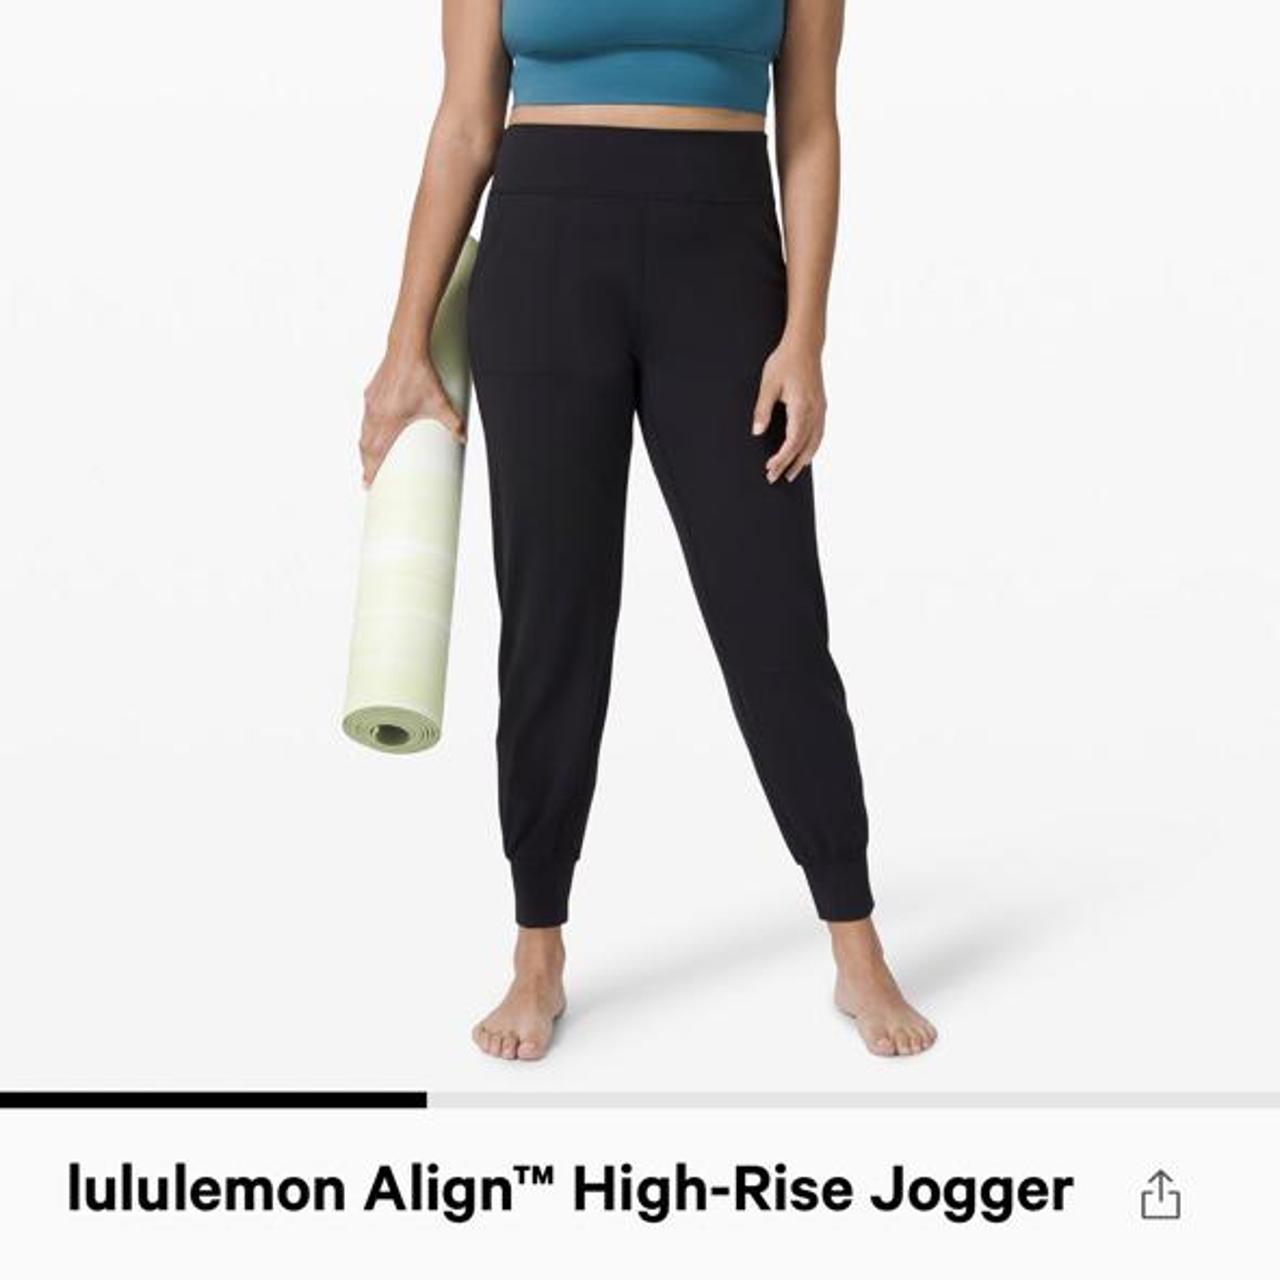 Lululemon align high-rise jogger size 6. I've only - Depop